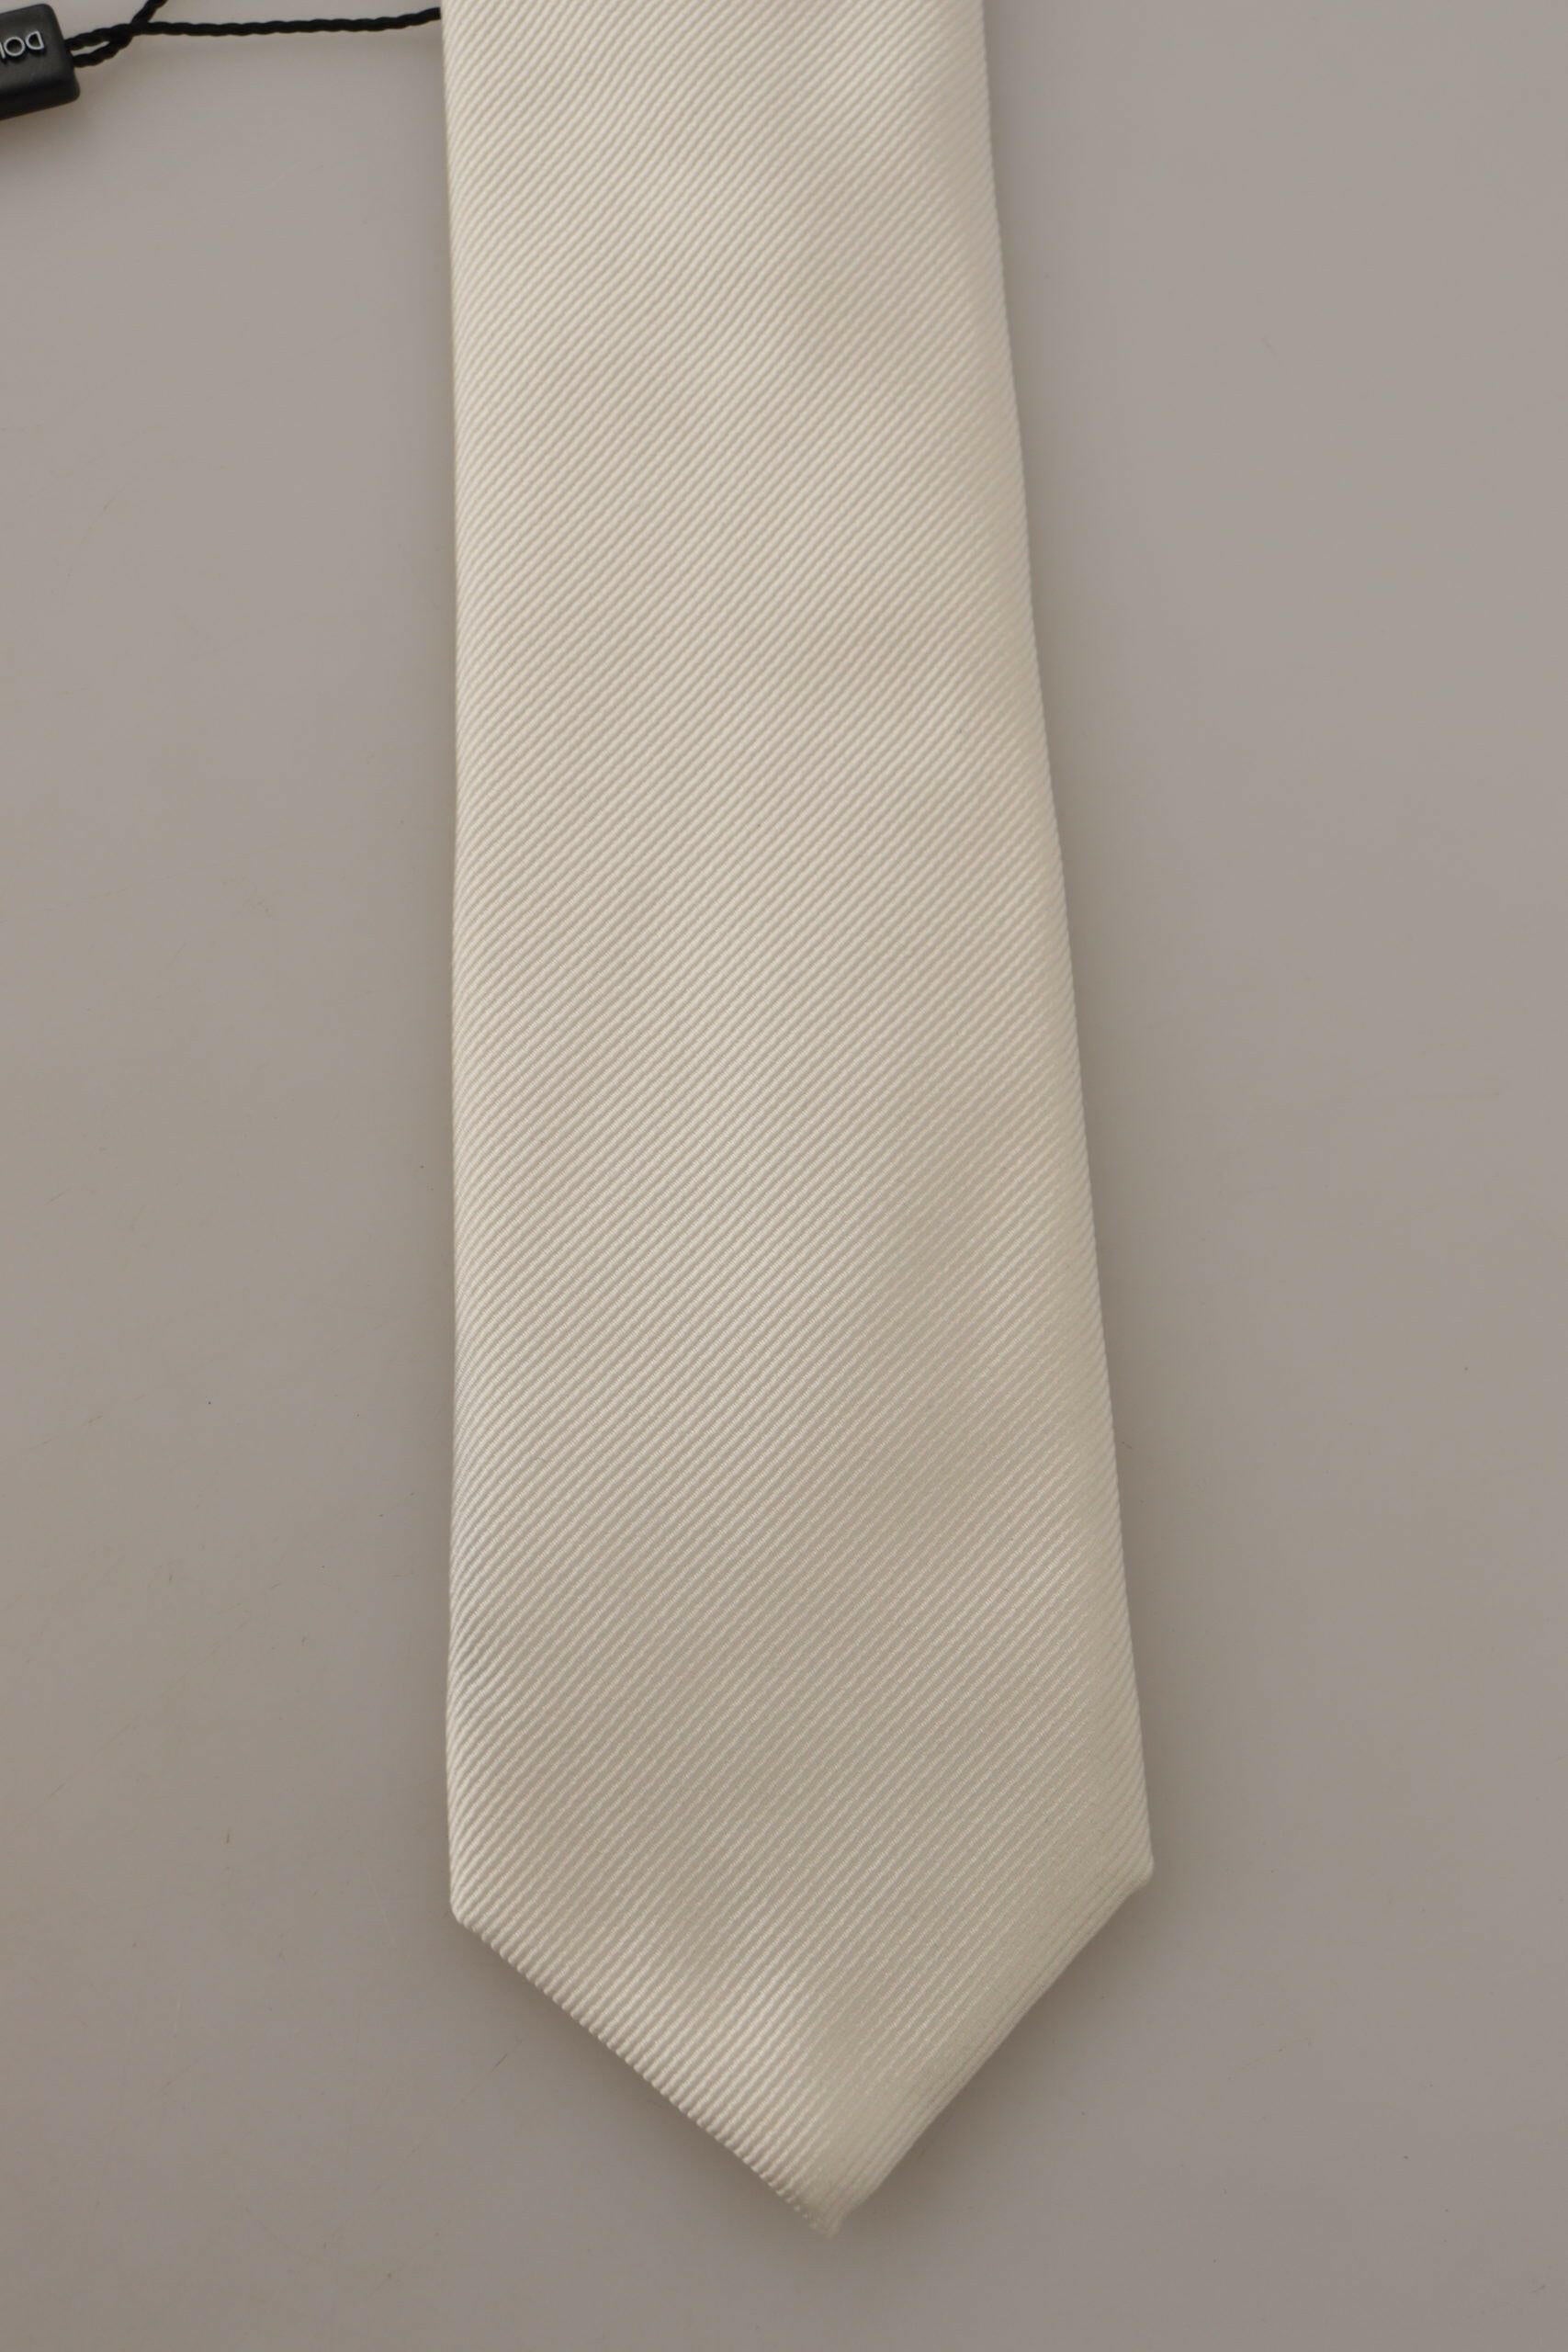 Dolce & Gabbana Off-White 100% Silk Slim Adjustable  Accessory Necktie - GENUINE AUTHENTIC BRAND LLC  